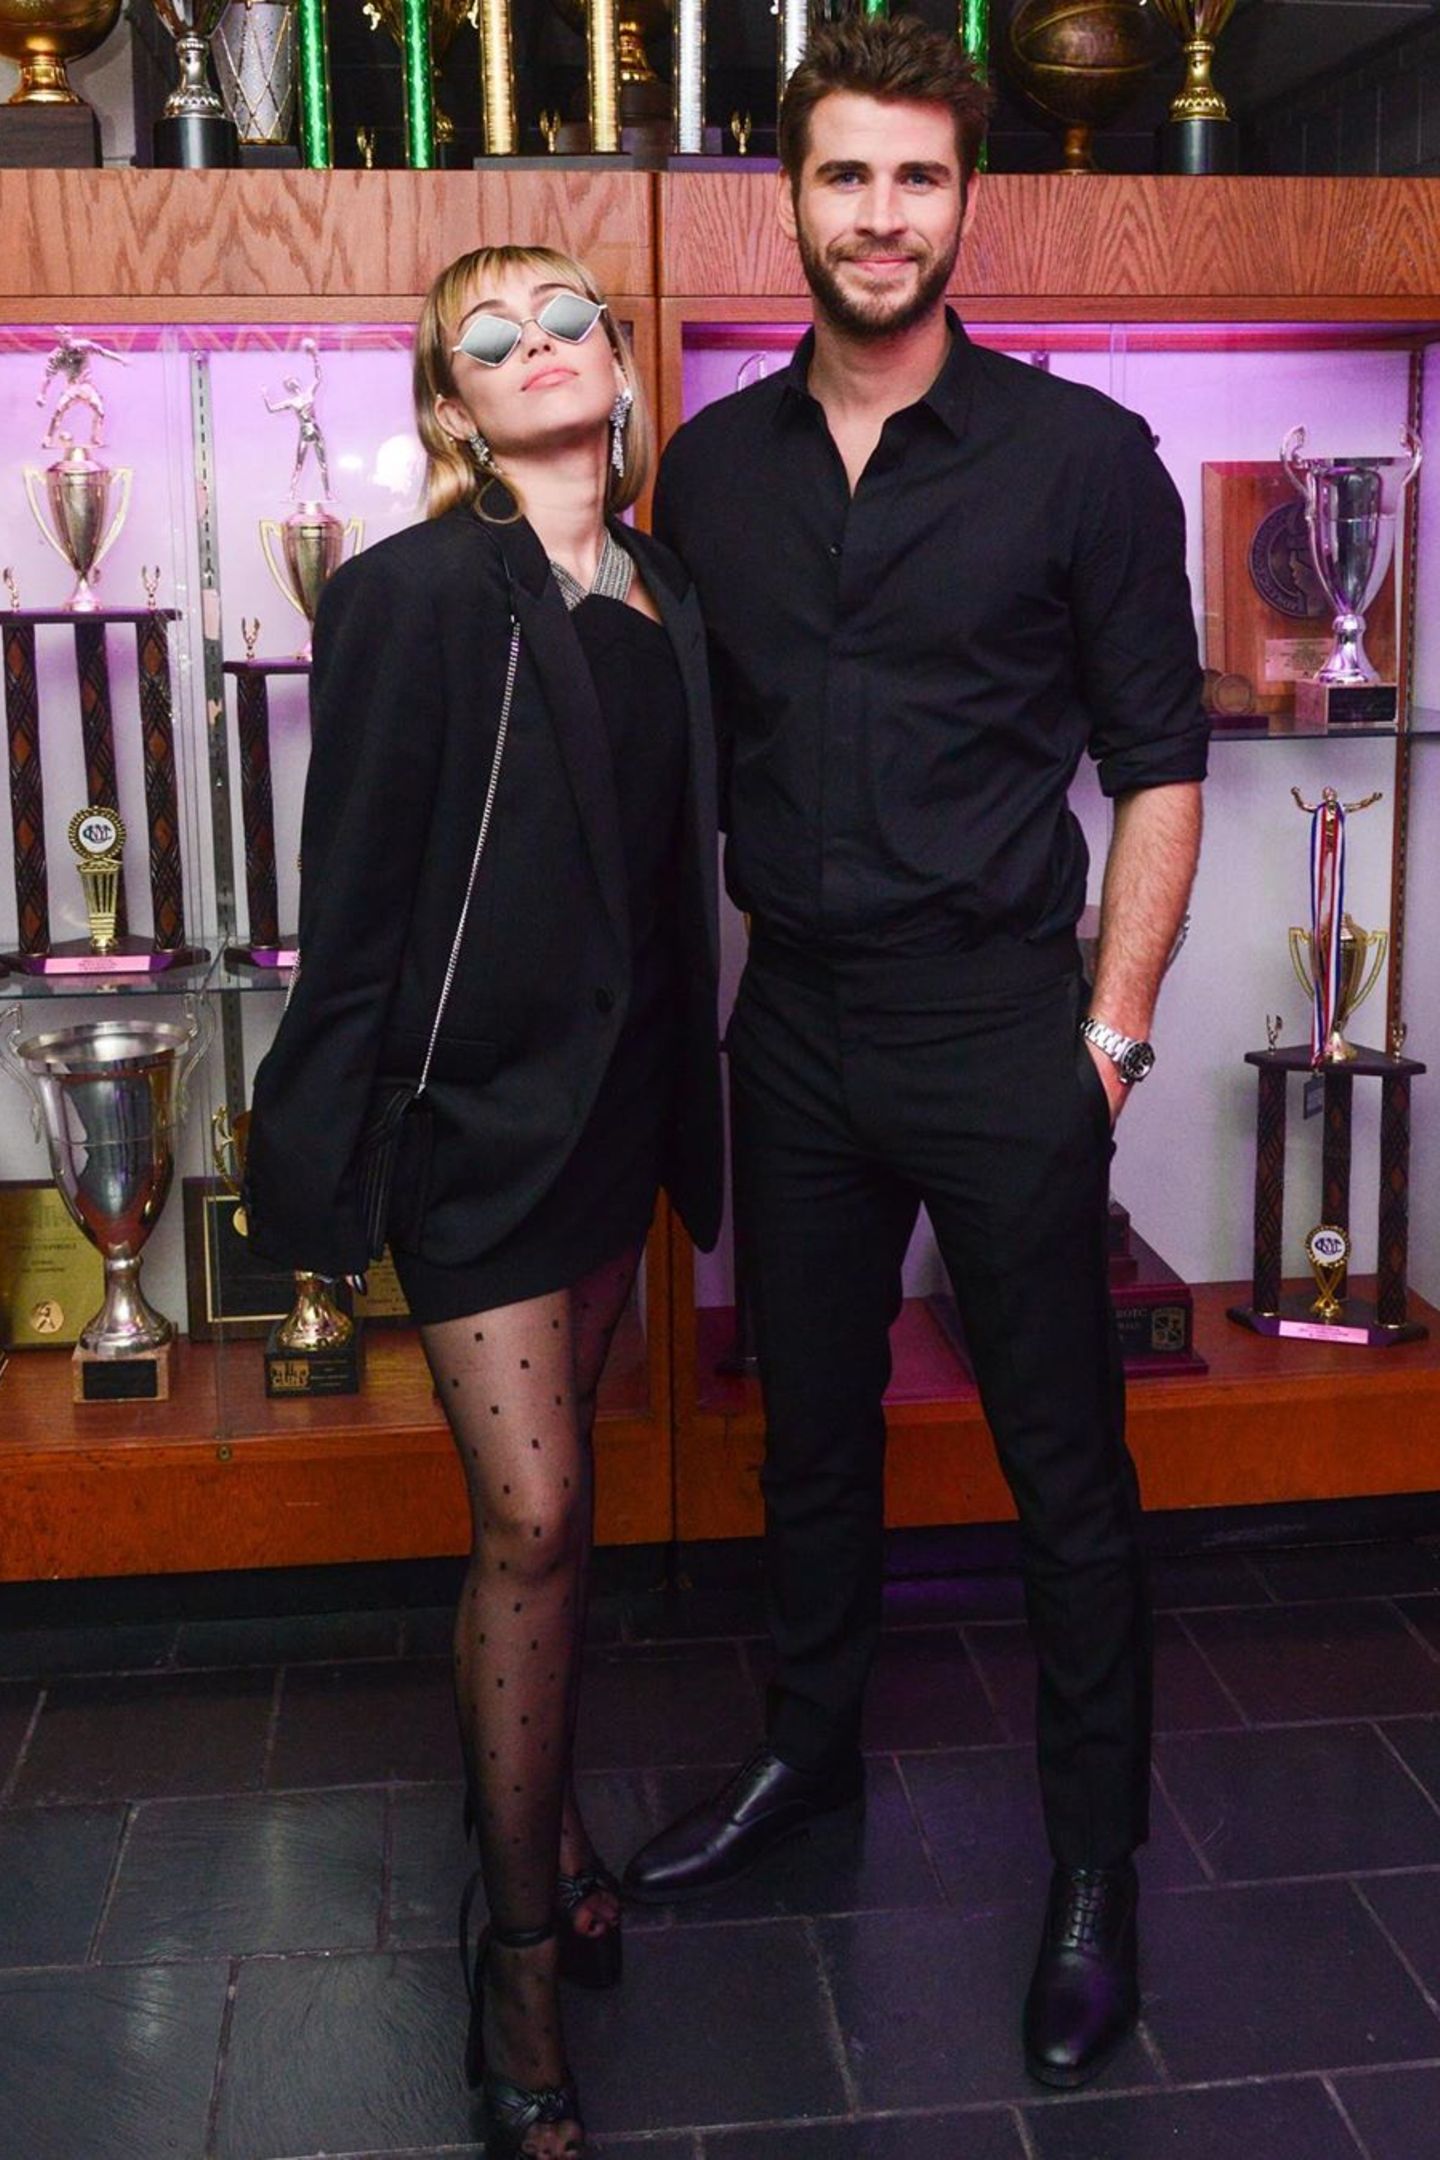 Mai 2019  Im August 2019 geben Miley Cyrus und Liam Hemsworth überraschen ihre Trennung bekannt. Das bis dato letzte gemeinsame Foto ist aus dem Mai 2019 und zeigt das Ehepaar Arm in Arm.